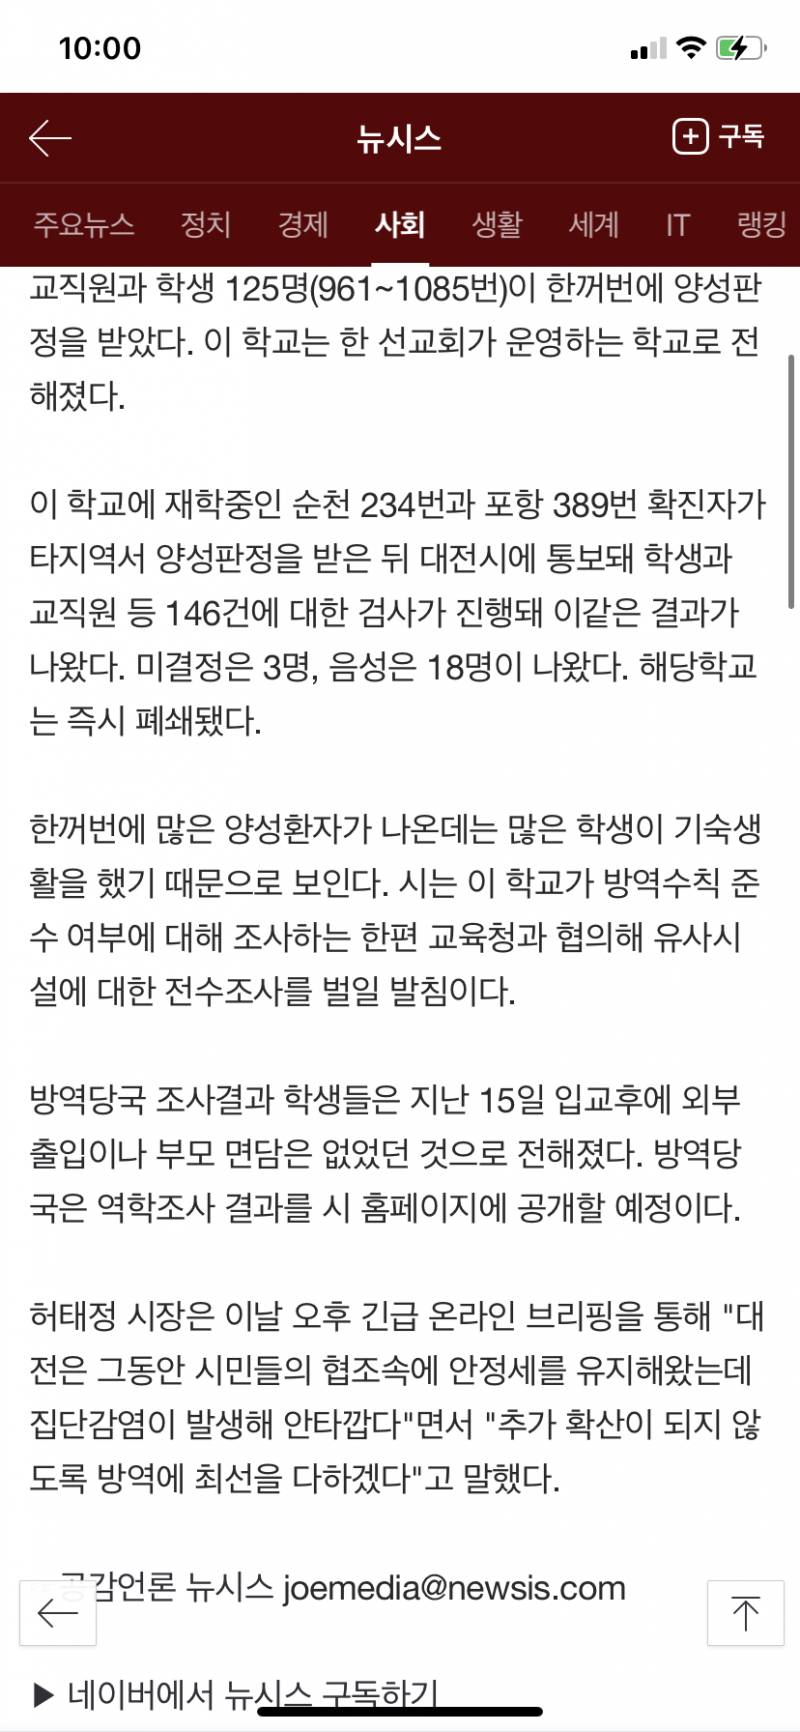 대전 집단감염 학교 1월 15일 이후 외부접촉 없었다함 | 인스티즈